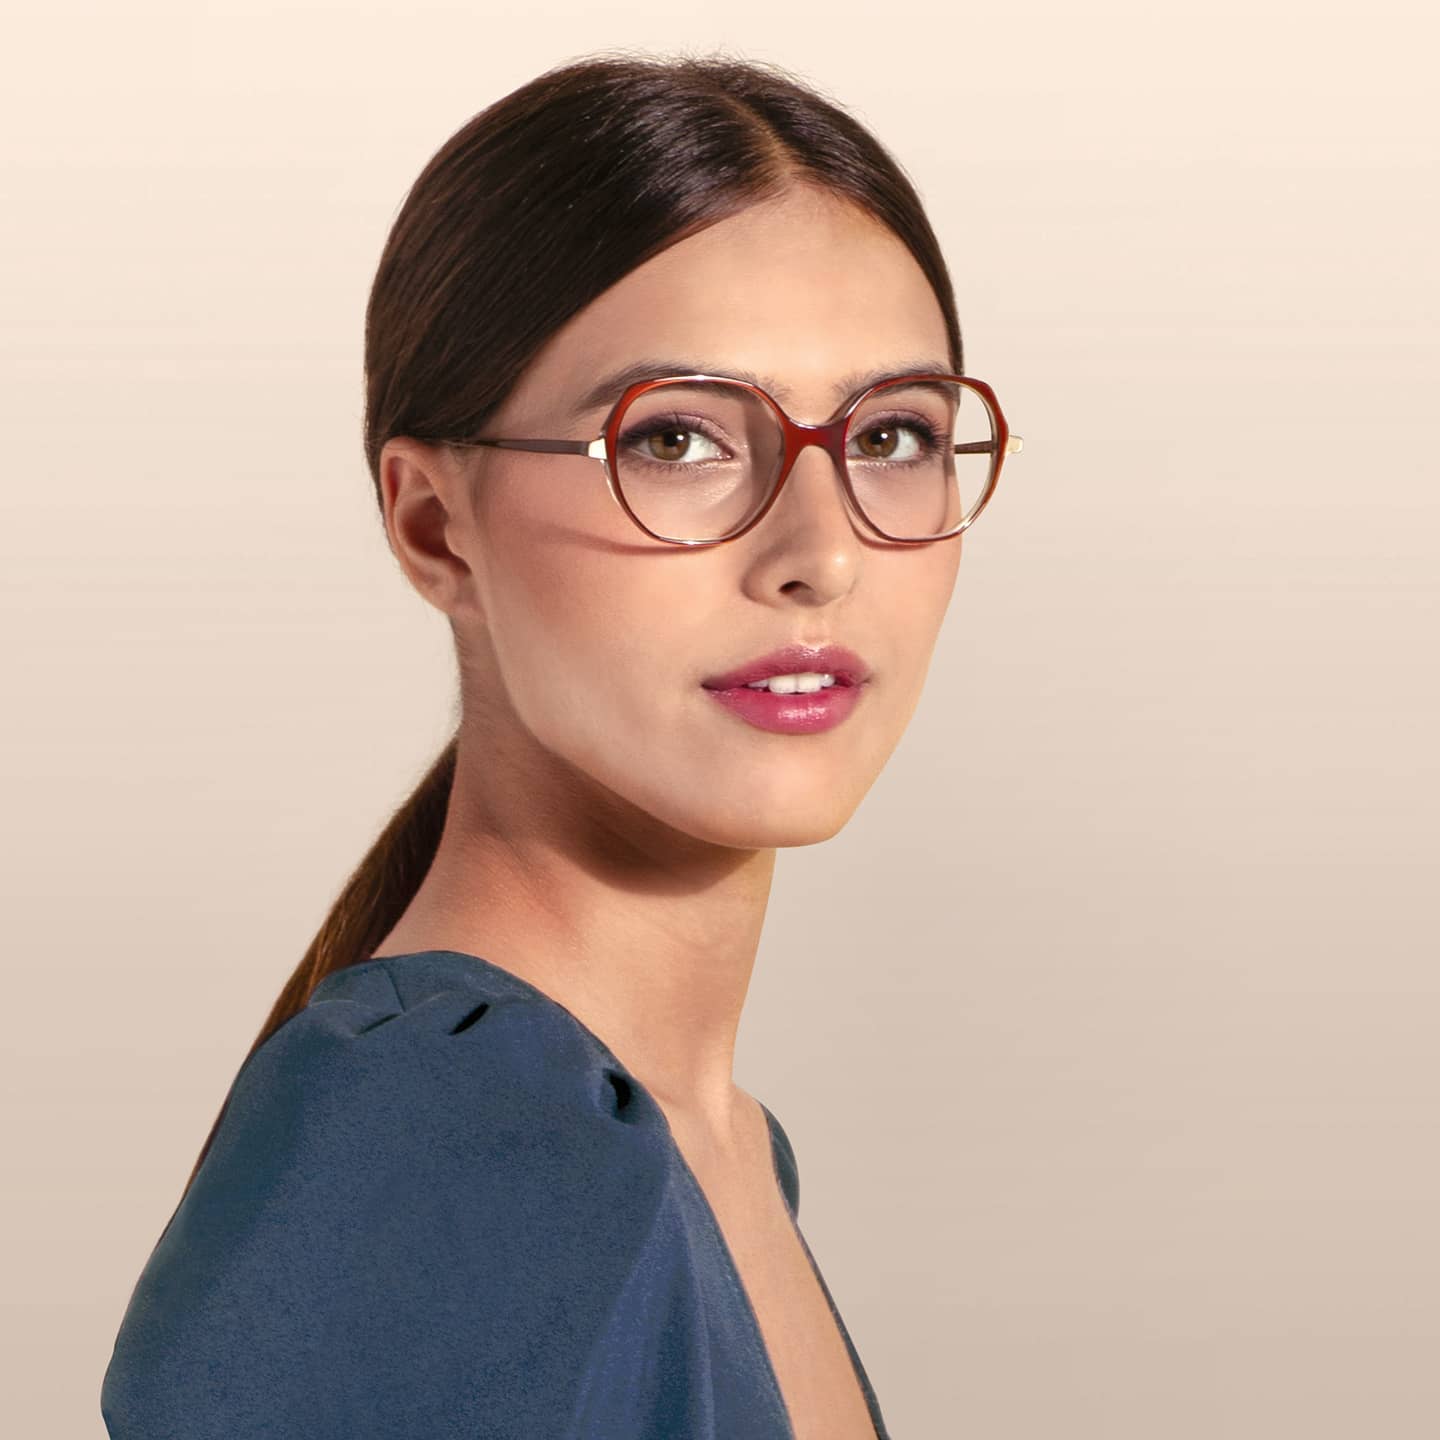 lafont woman eyeglasses feb 18 2021